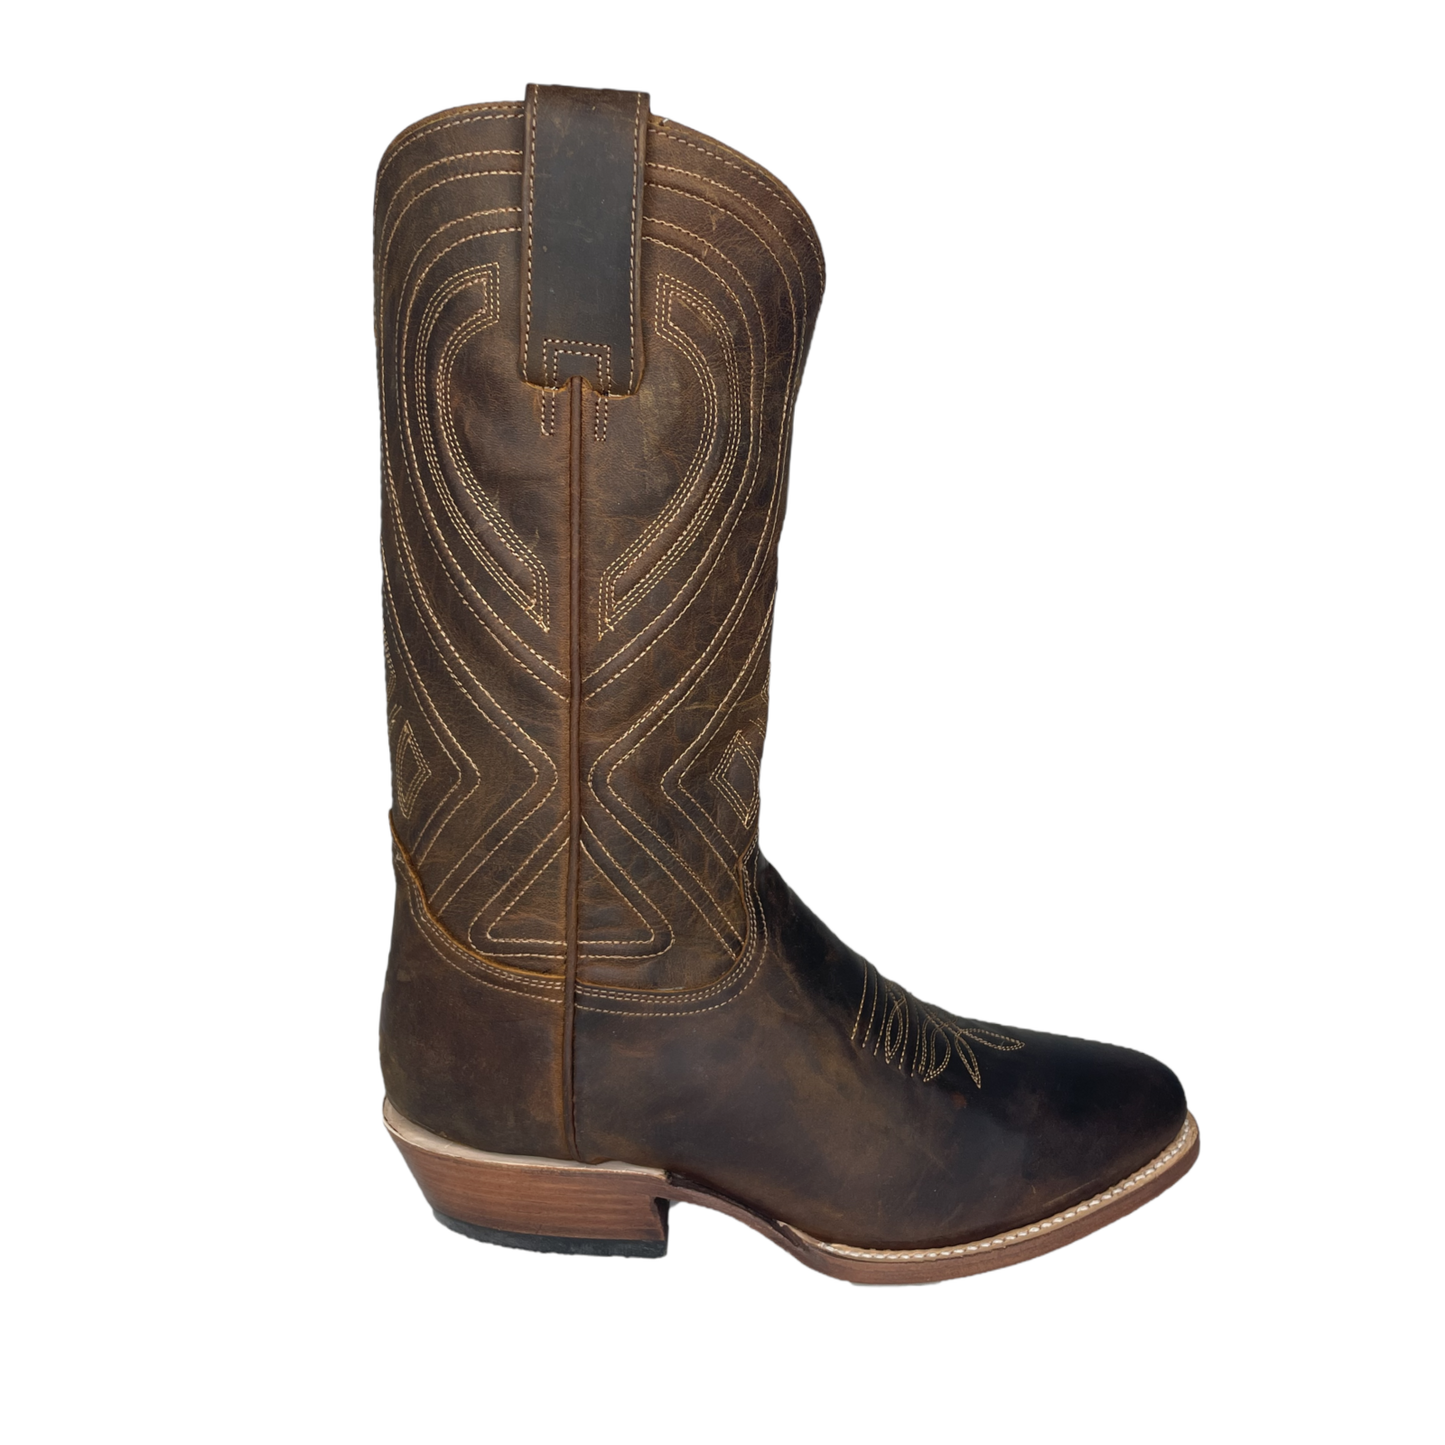 Roper® Men's Mossman R-Toe Brown Boots 12-020-7311-3842